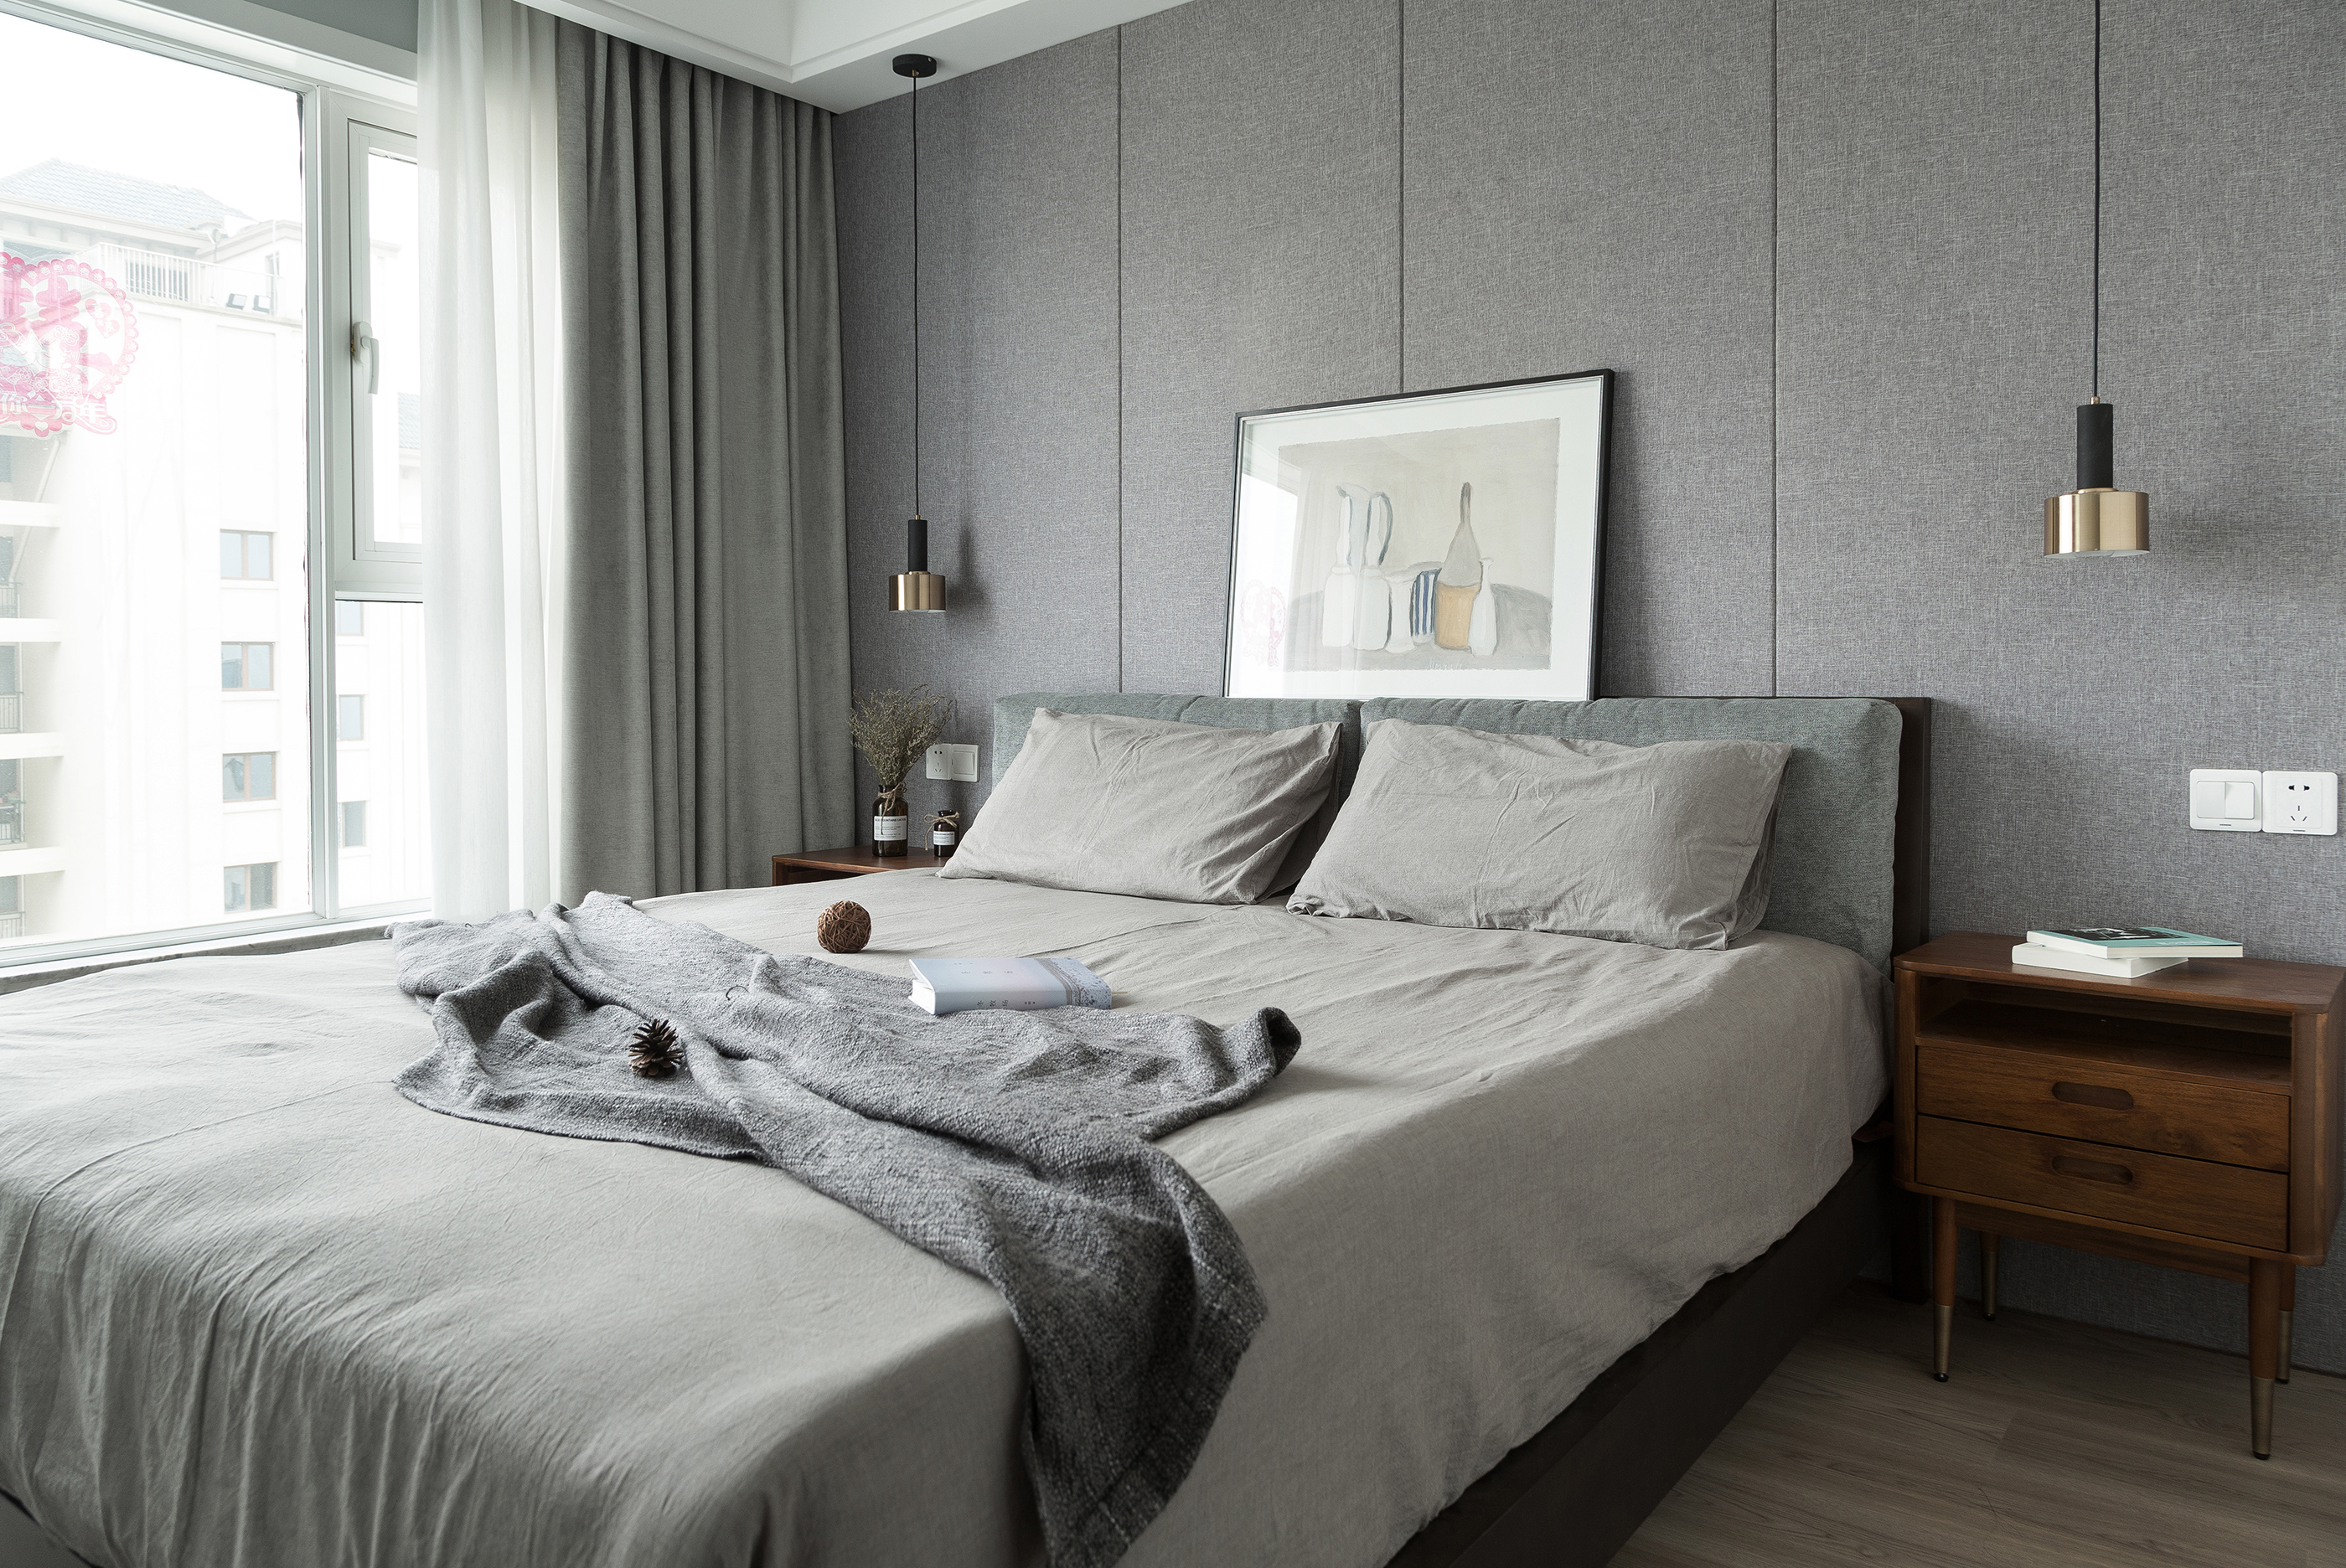 卧室床3装修效果图质朴98平北欧三居卧室设计美图北欧风卧室设计图片赏析